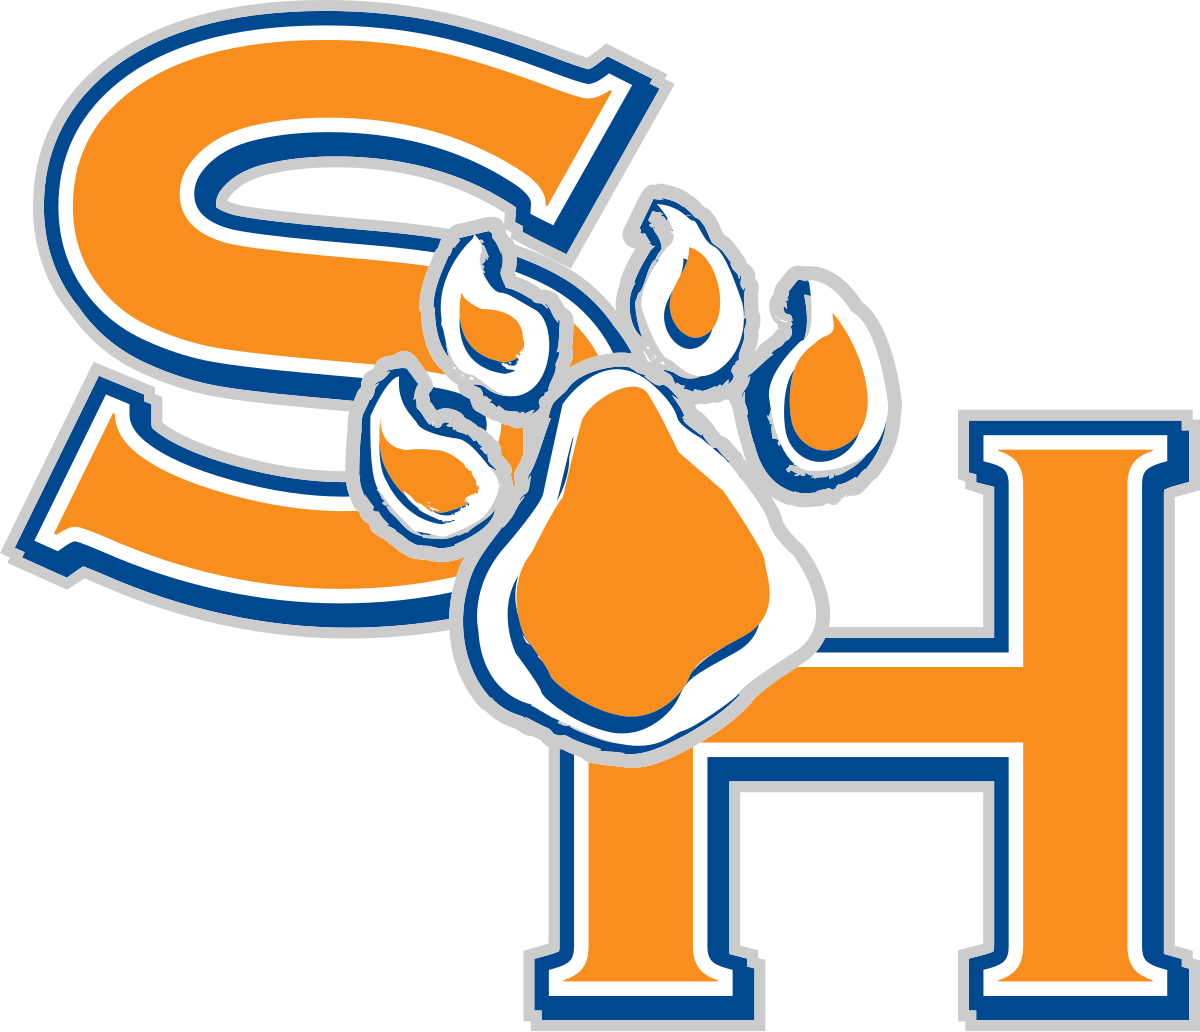 Sam Houston Clipart - Sam Houston State University Mascot (1200x1032)